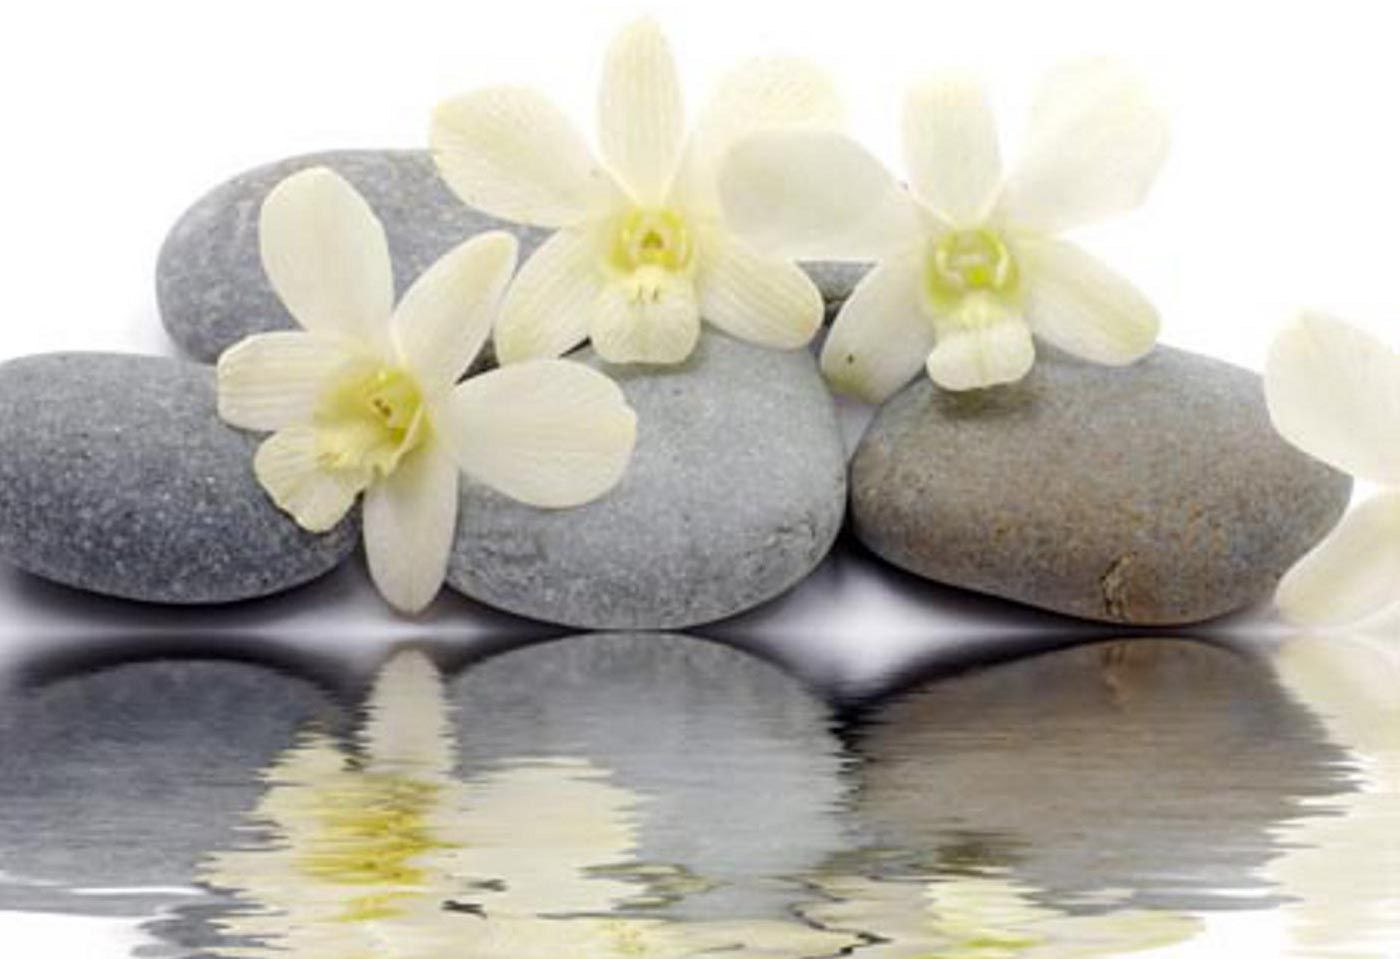 hd-wallpapers-zen-stones-reflecting-white-flowers-new-desktop ...